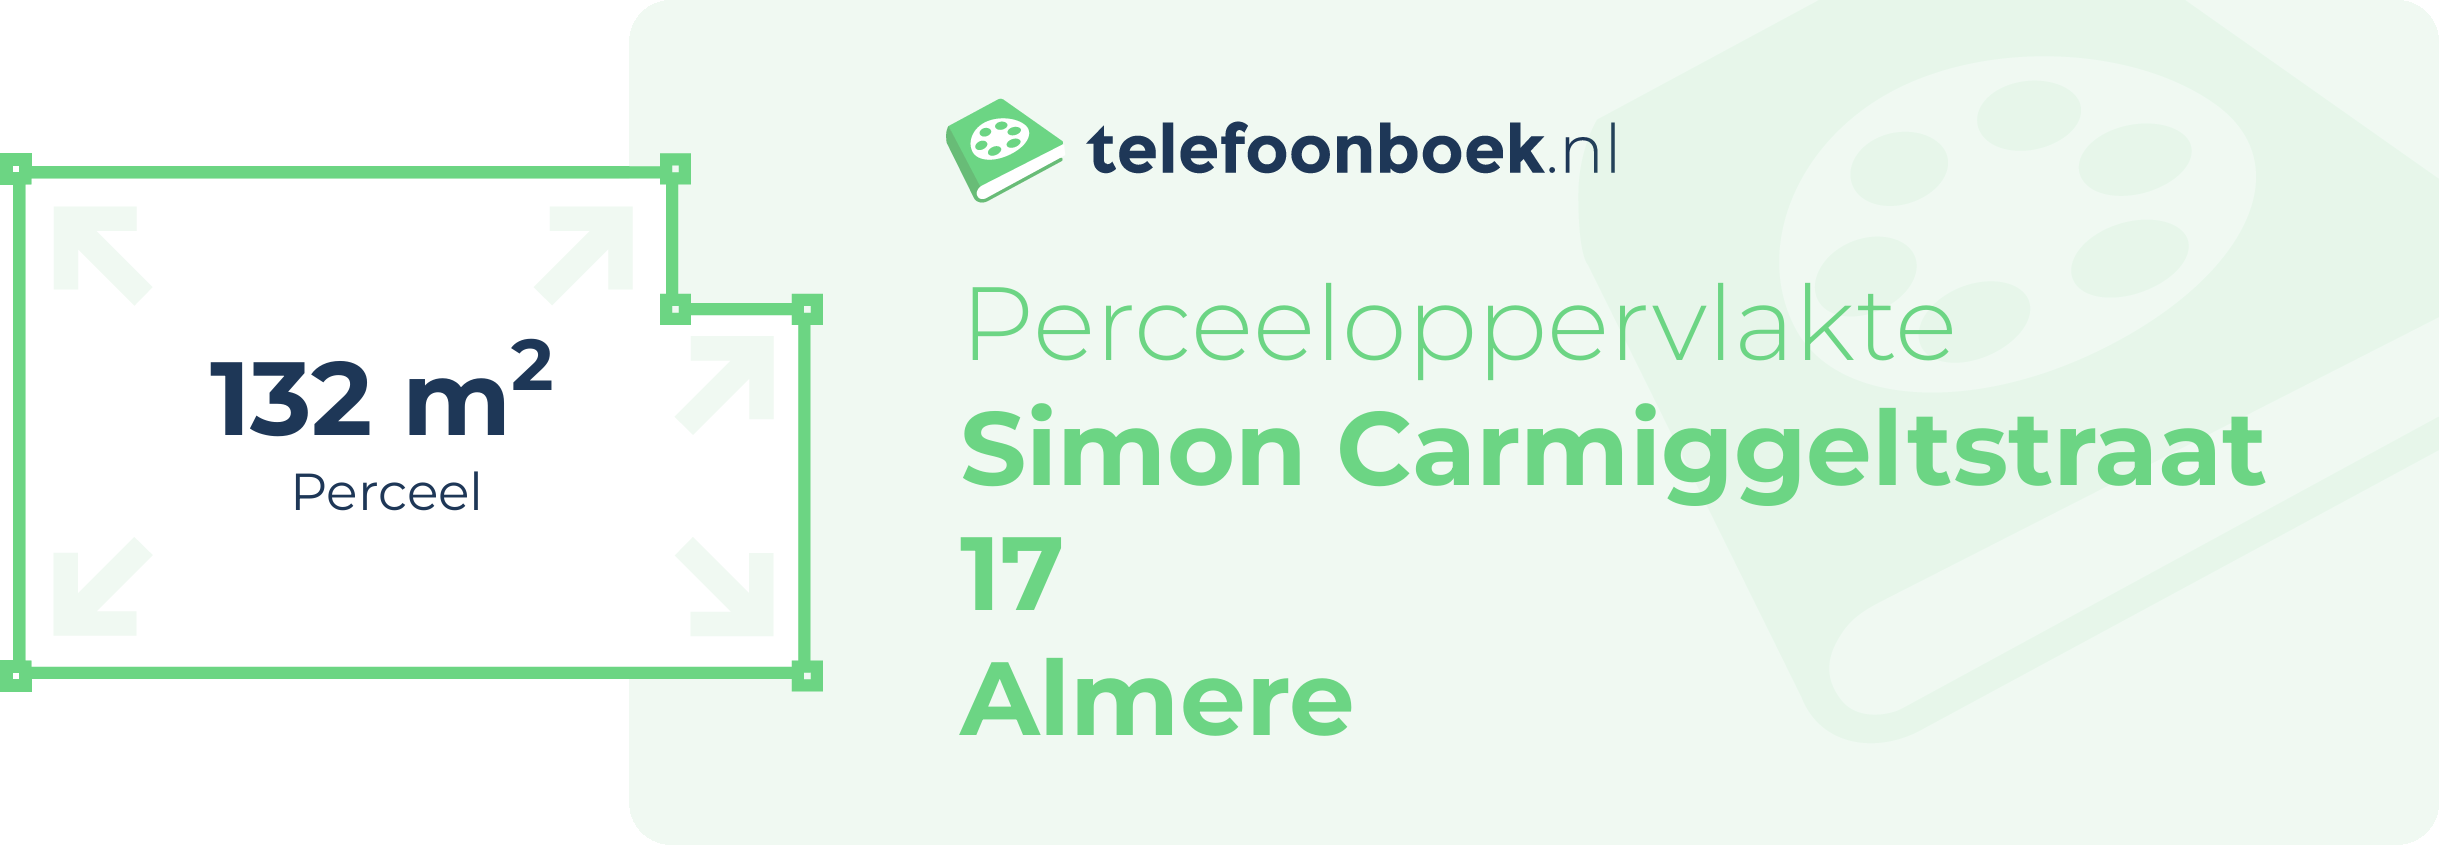 Perceeloppervlakte Simon Carmiggeltstraat 17 Almere